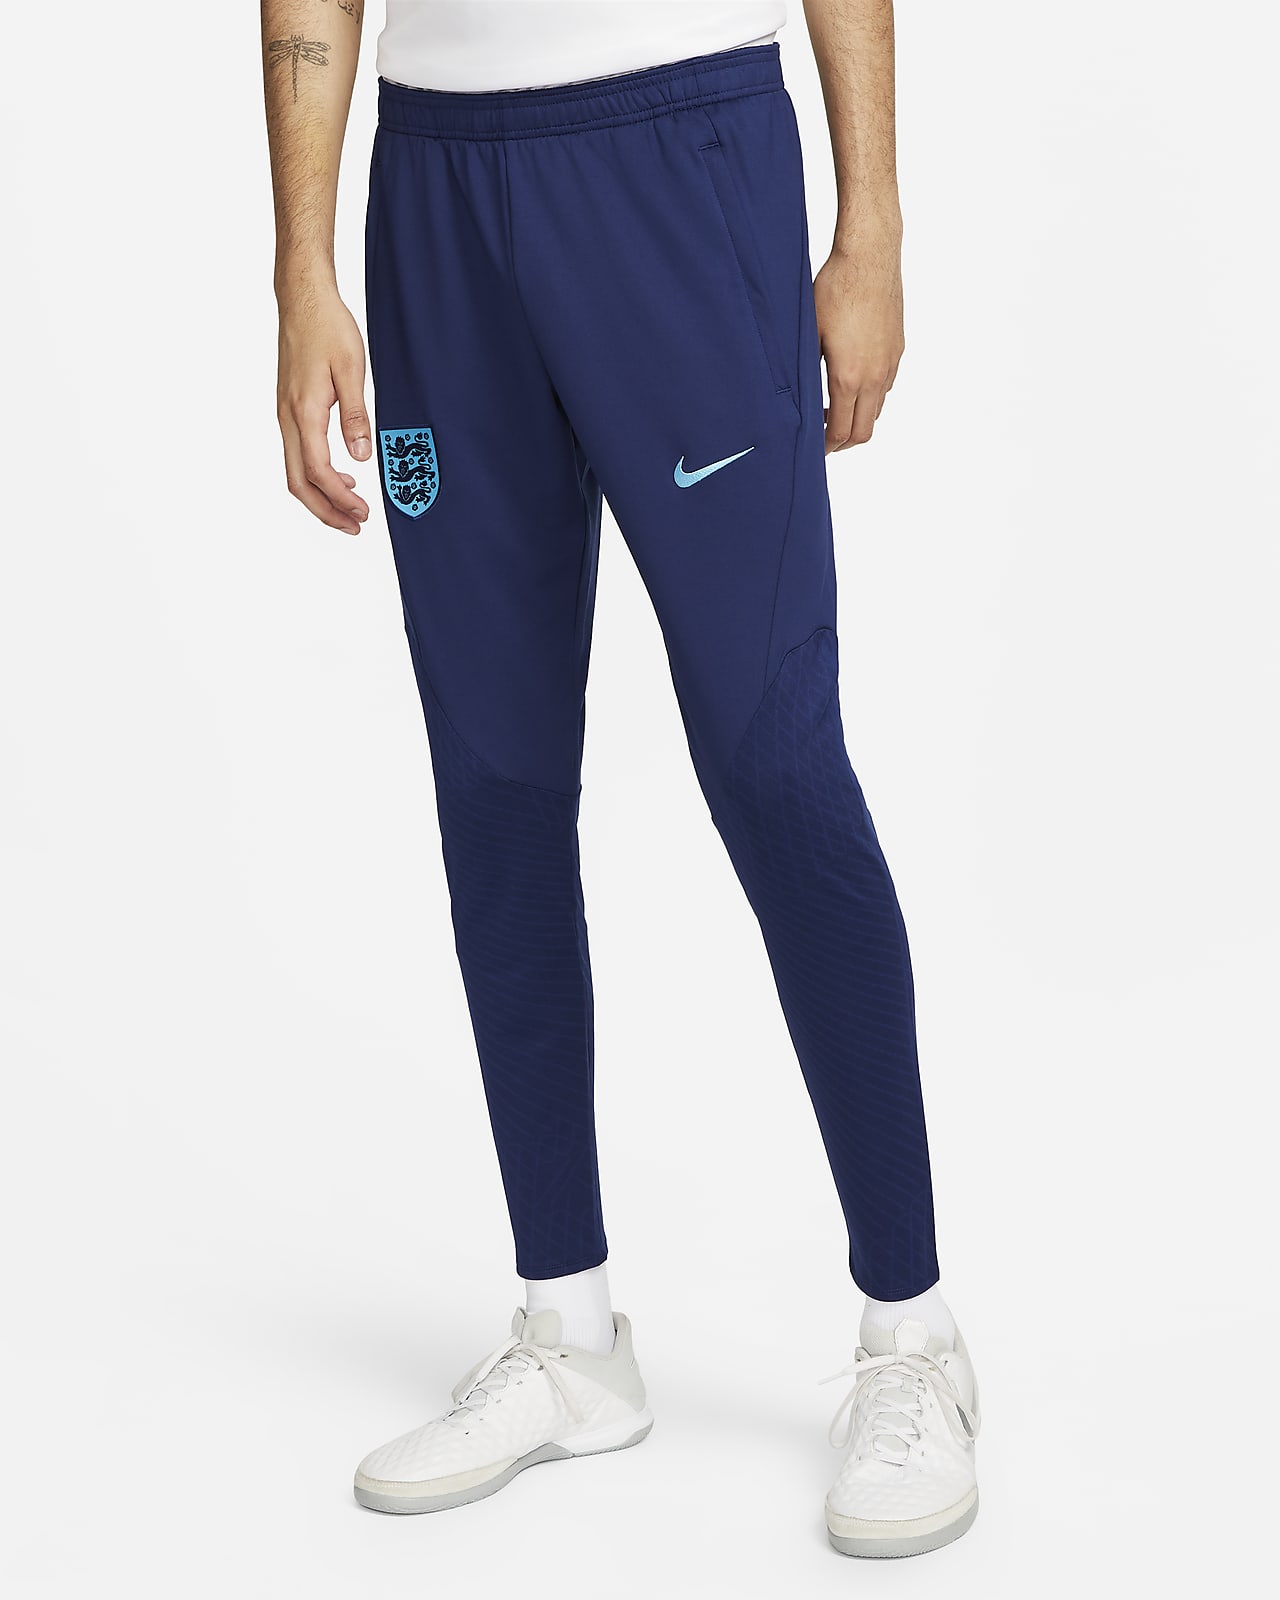 England Strike Men's Nike Dri-FIT Pants.